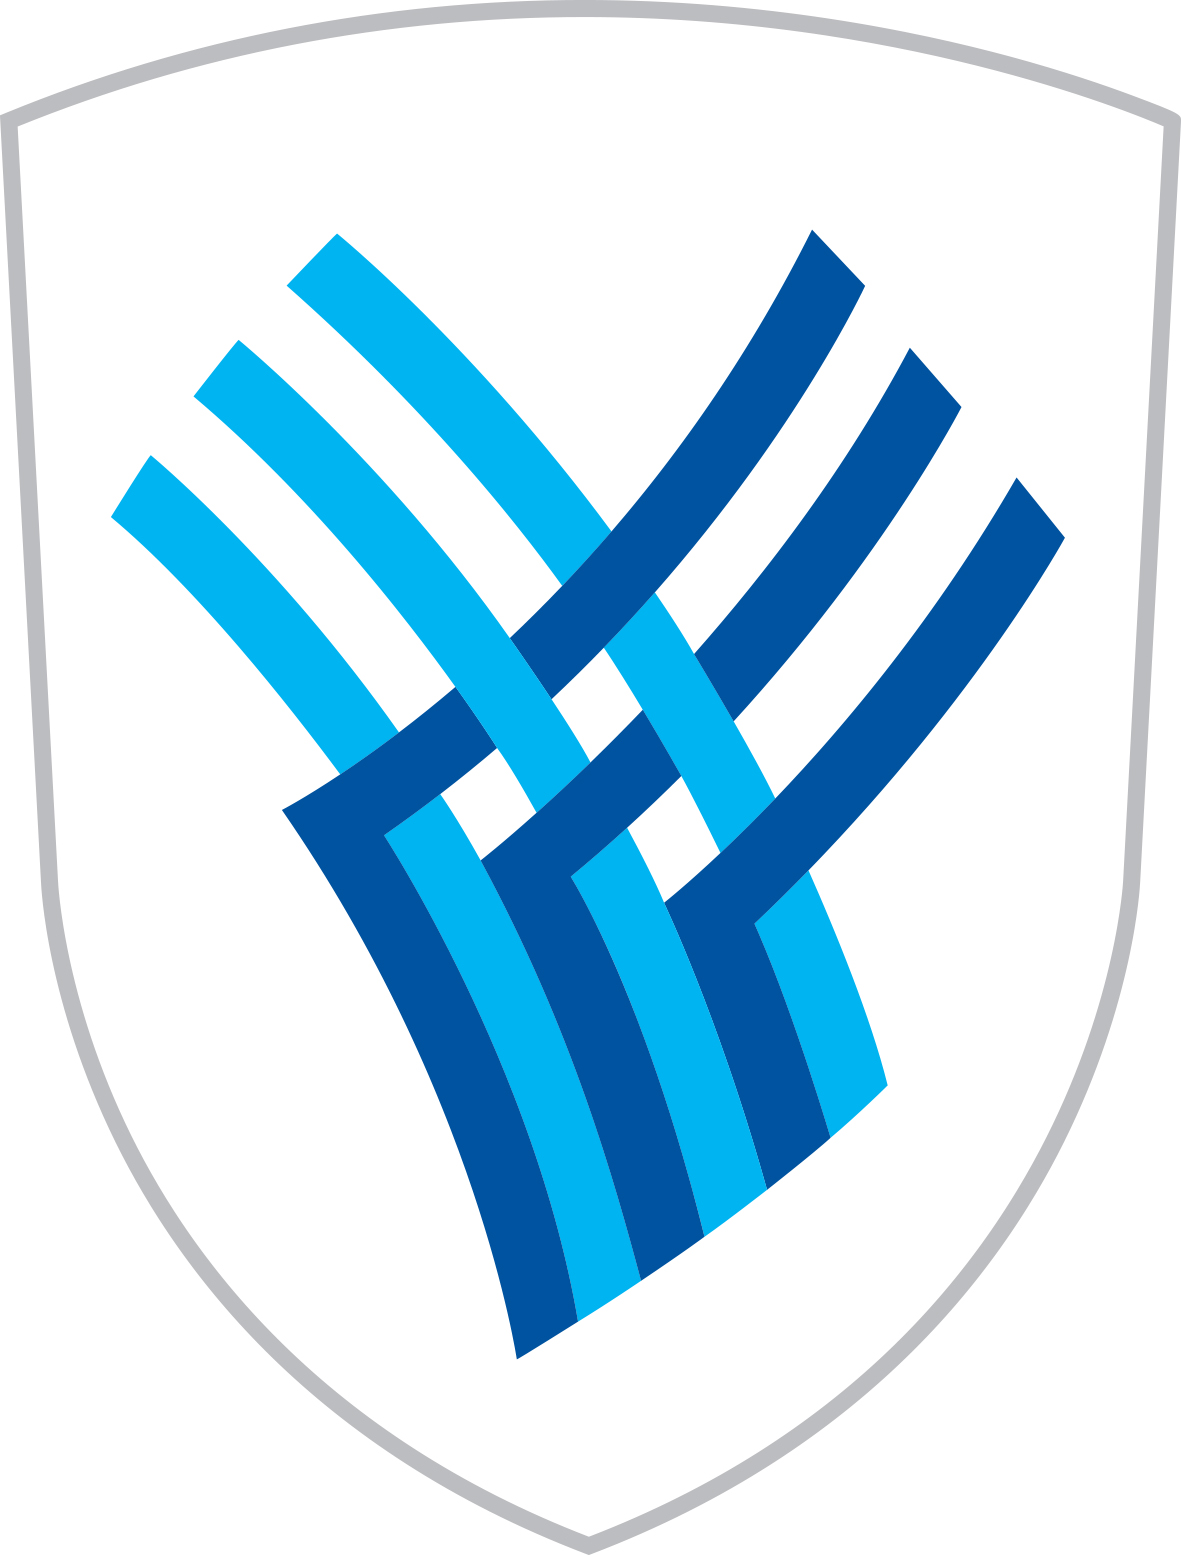 Grb občine Medvode